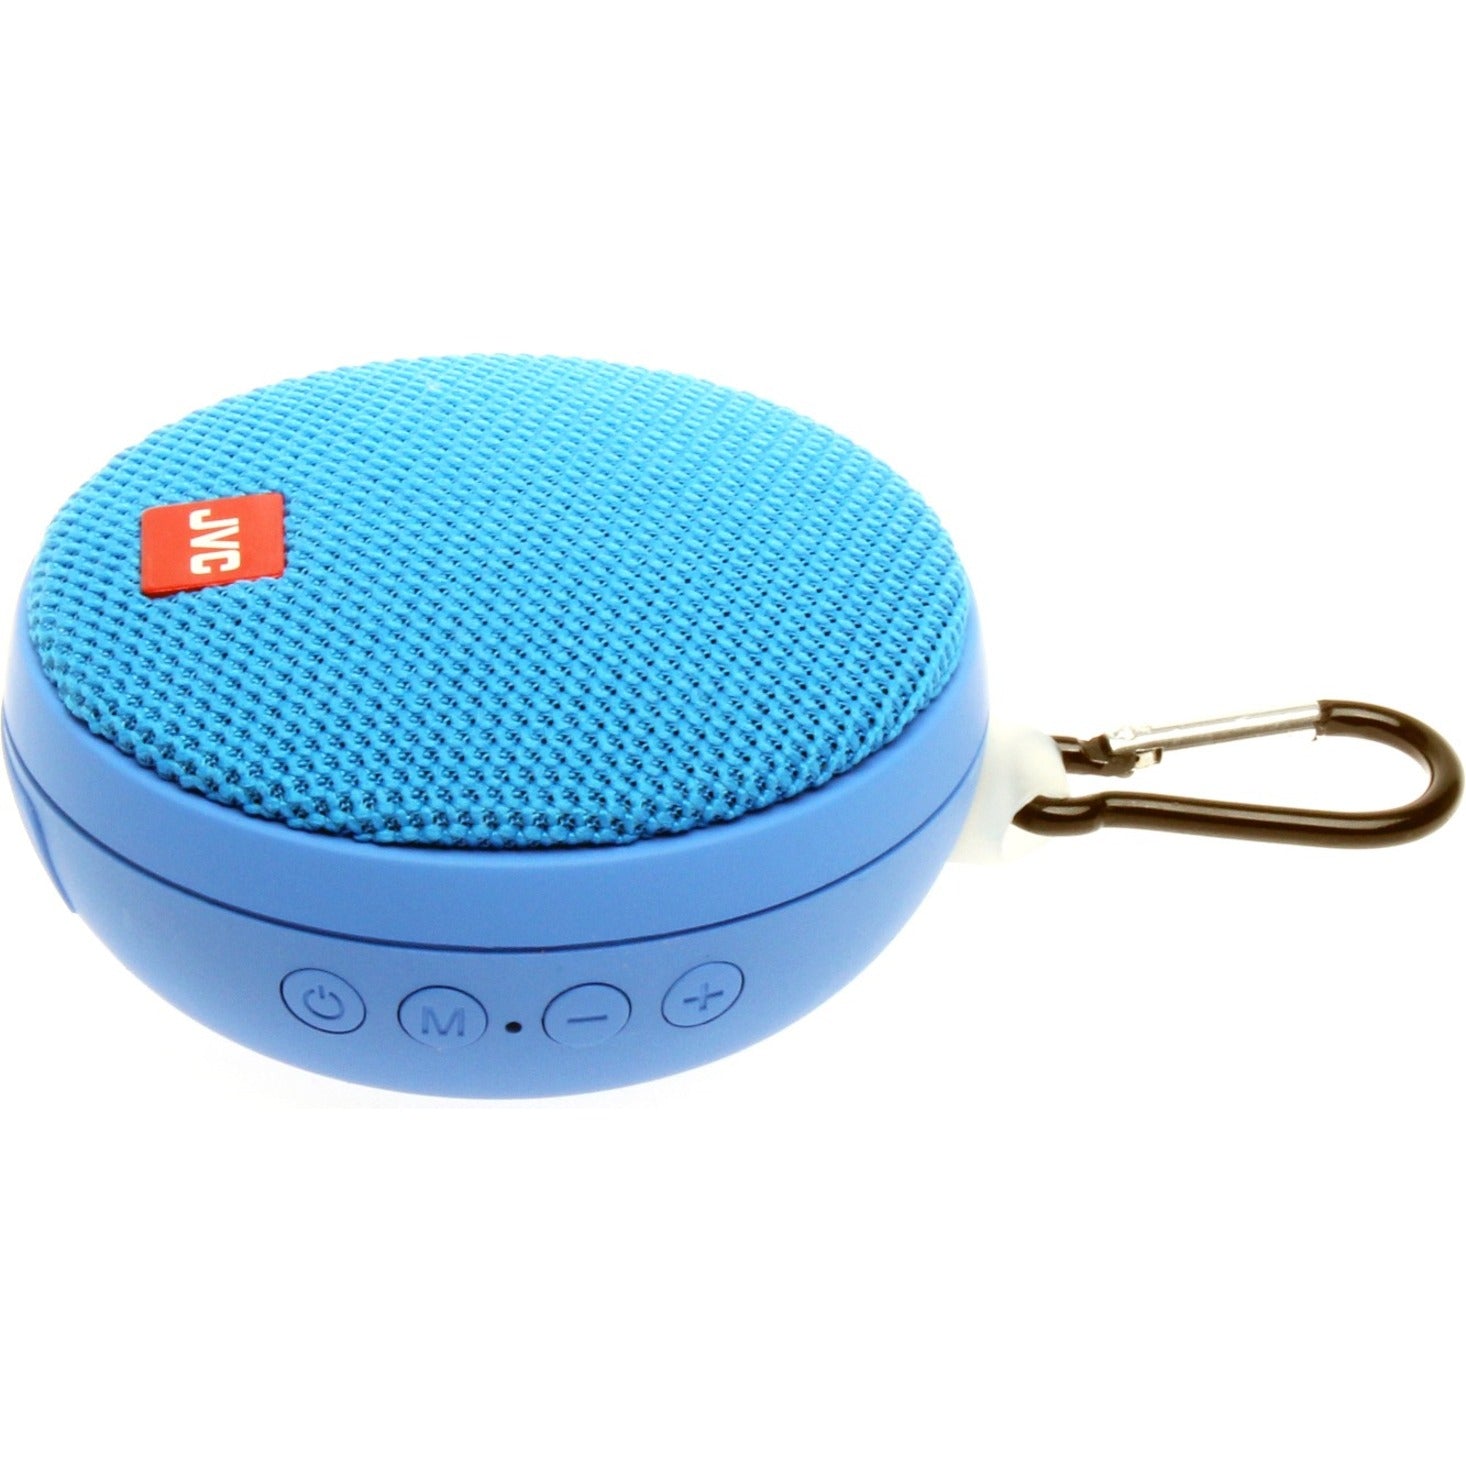 JVC SPSA2BTA Speaker System, Portable Bluetooth Speaker with Surround Sound, Blue